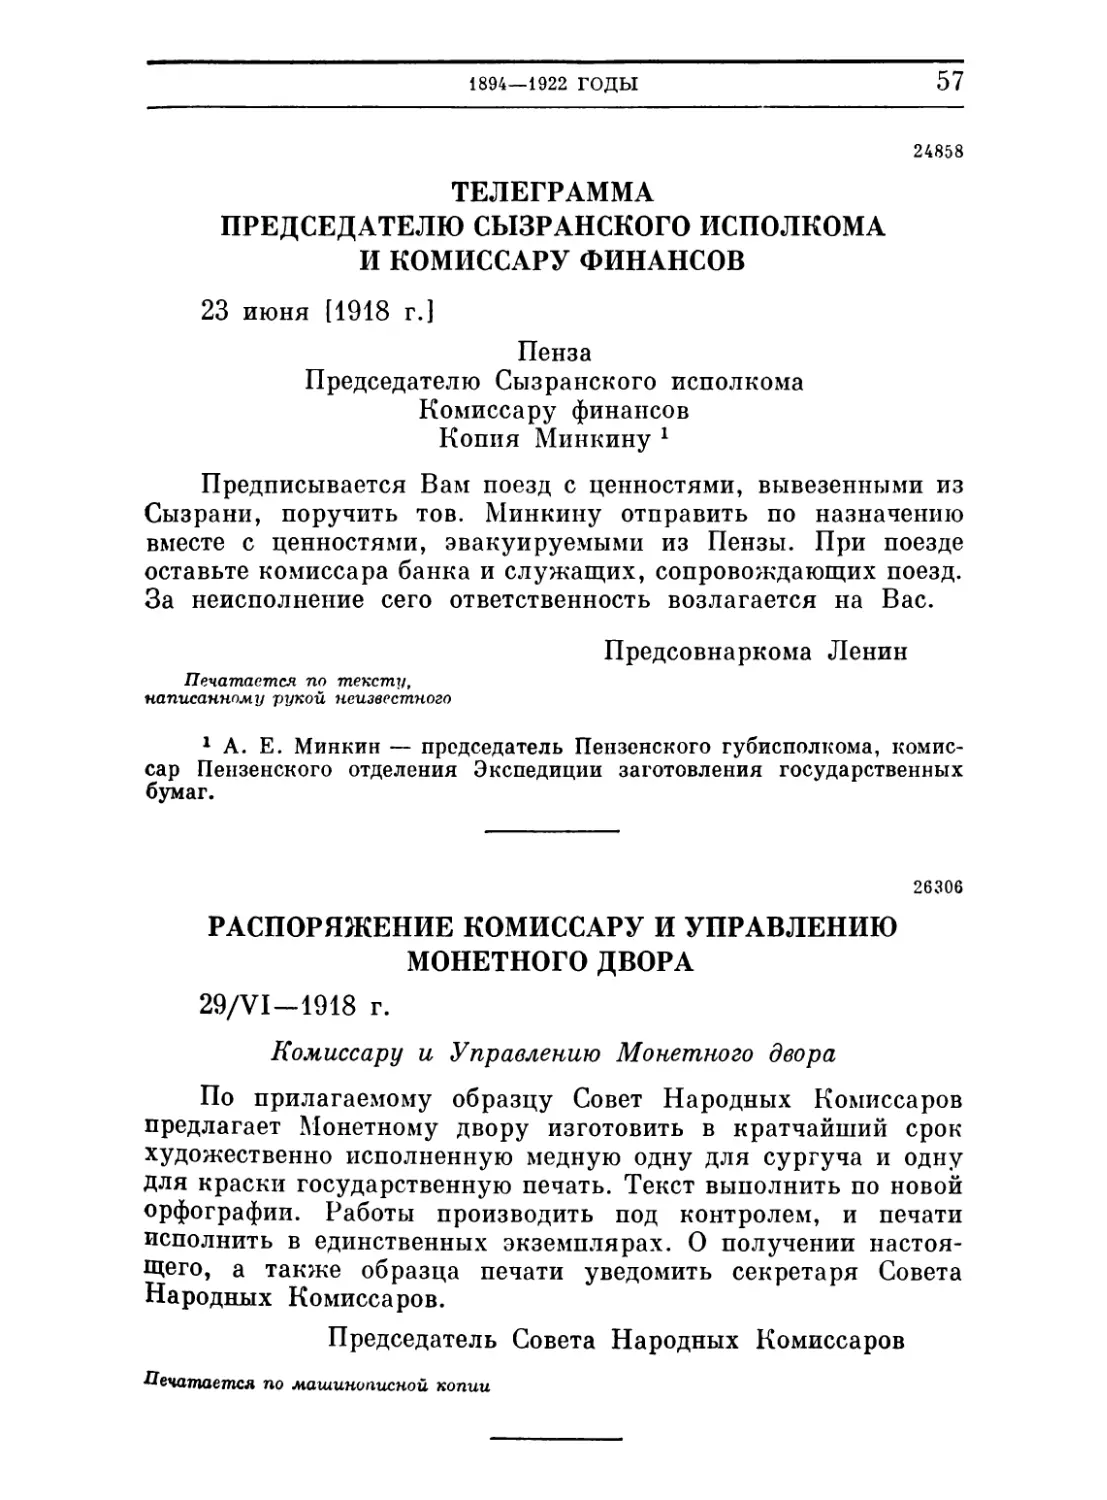 Телеграмма председателю Сызранского исполкома и комиссару финансов. 23 июня 1918
Распоряжение комиссару и управлению монетного двора. 29 июня 1918